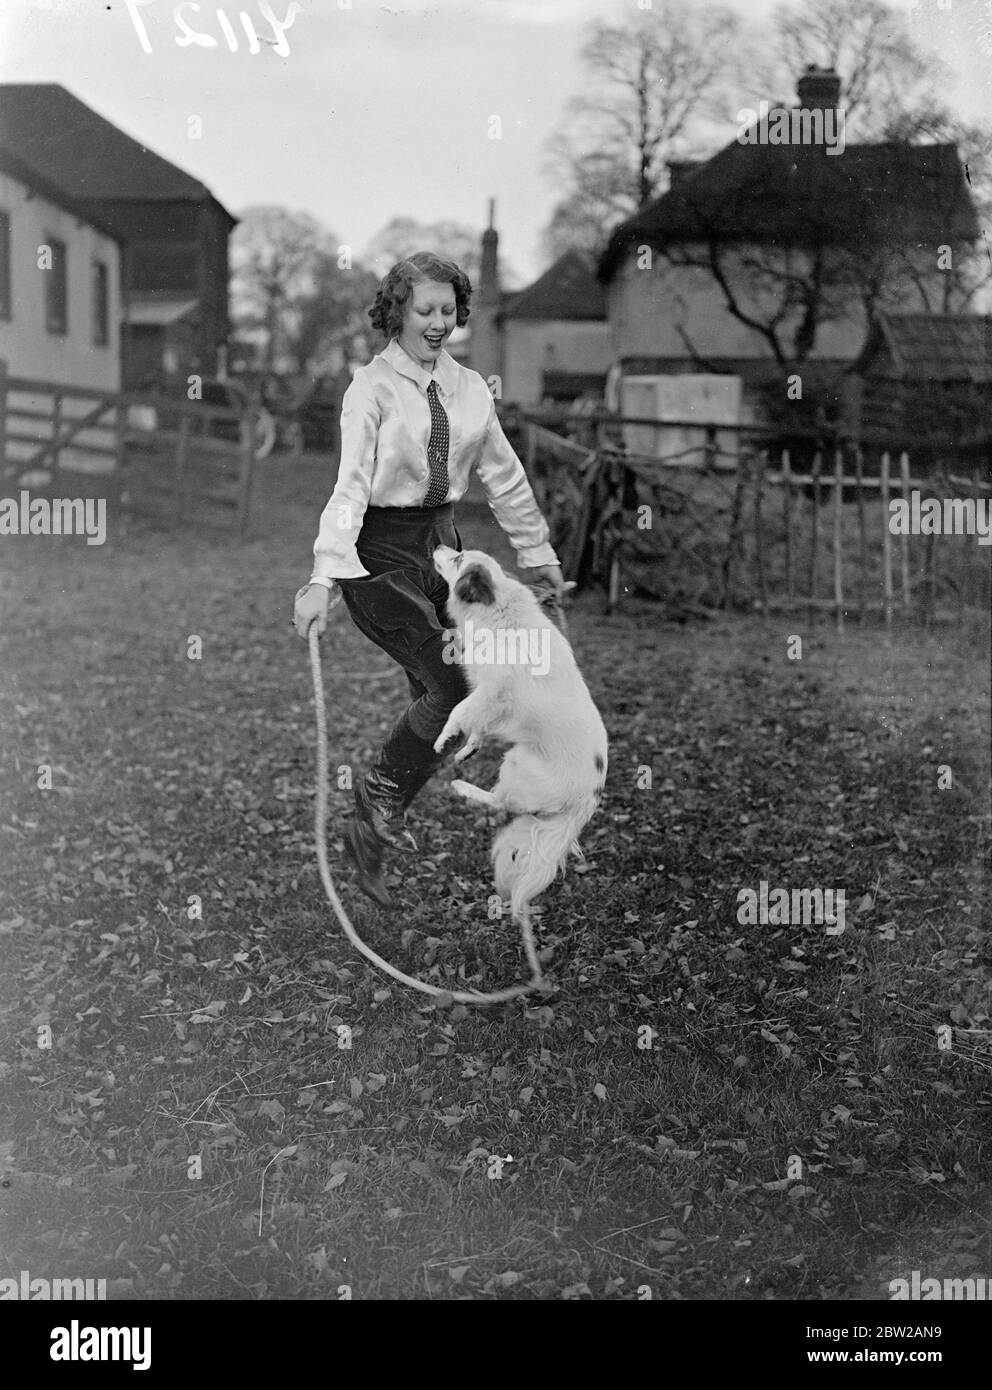 Ottenere in assetto per l'anello circo. Olga Astley, 16 anni, una delle più giovani addestratori di animali della Gran Bretagna, è impegnata nei suoi quartieri Ongar (Essex) insegnando i suoi pony Shetland e eseguendo i cani i loro nuovi atti per i pantomimi di Natale e circo. Molti degli animali di Olga appaiono in atti in tutto il paese. Spettacoli fotografici, Olga Astley 'Skippy' fate un giro con la corda insieme a Ongar. 14 novembre 1937 Foto Stock